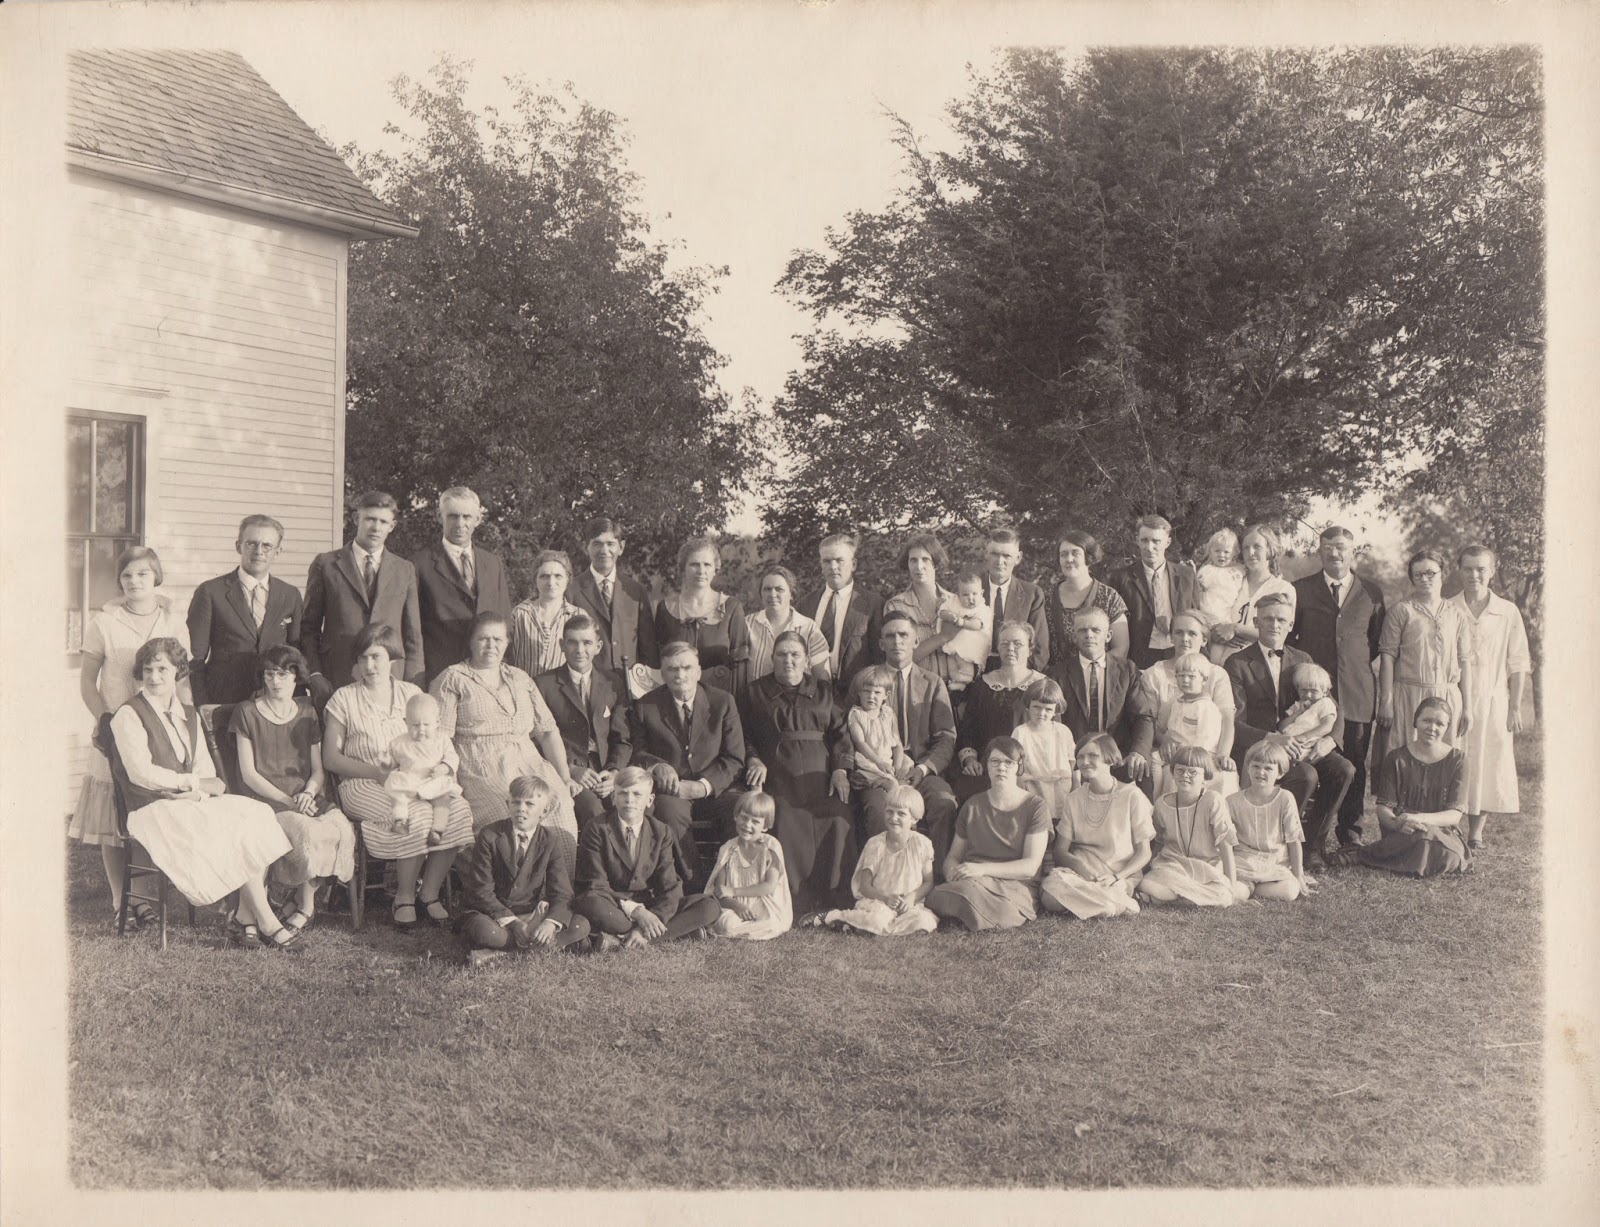 Photo of the 1925 Mattson Family Reunion, Cokato, MN